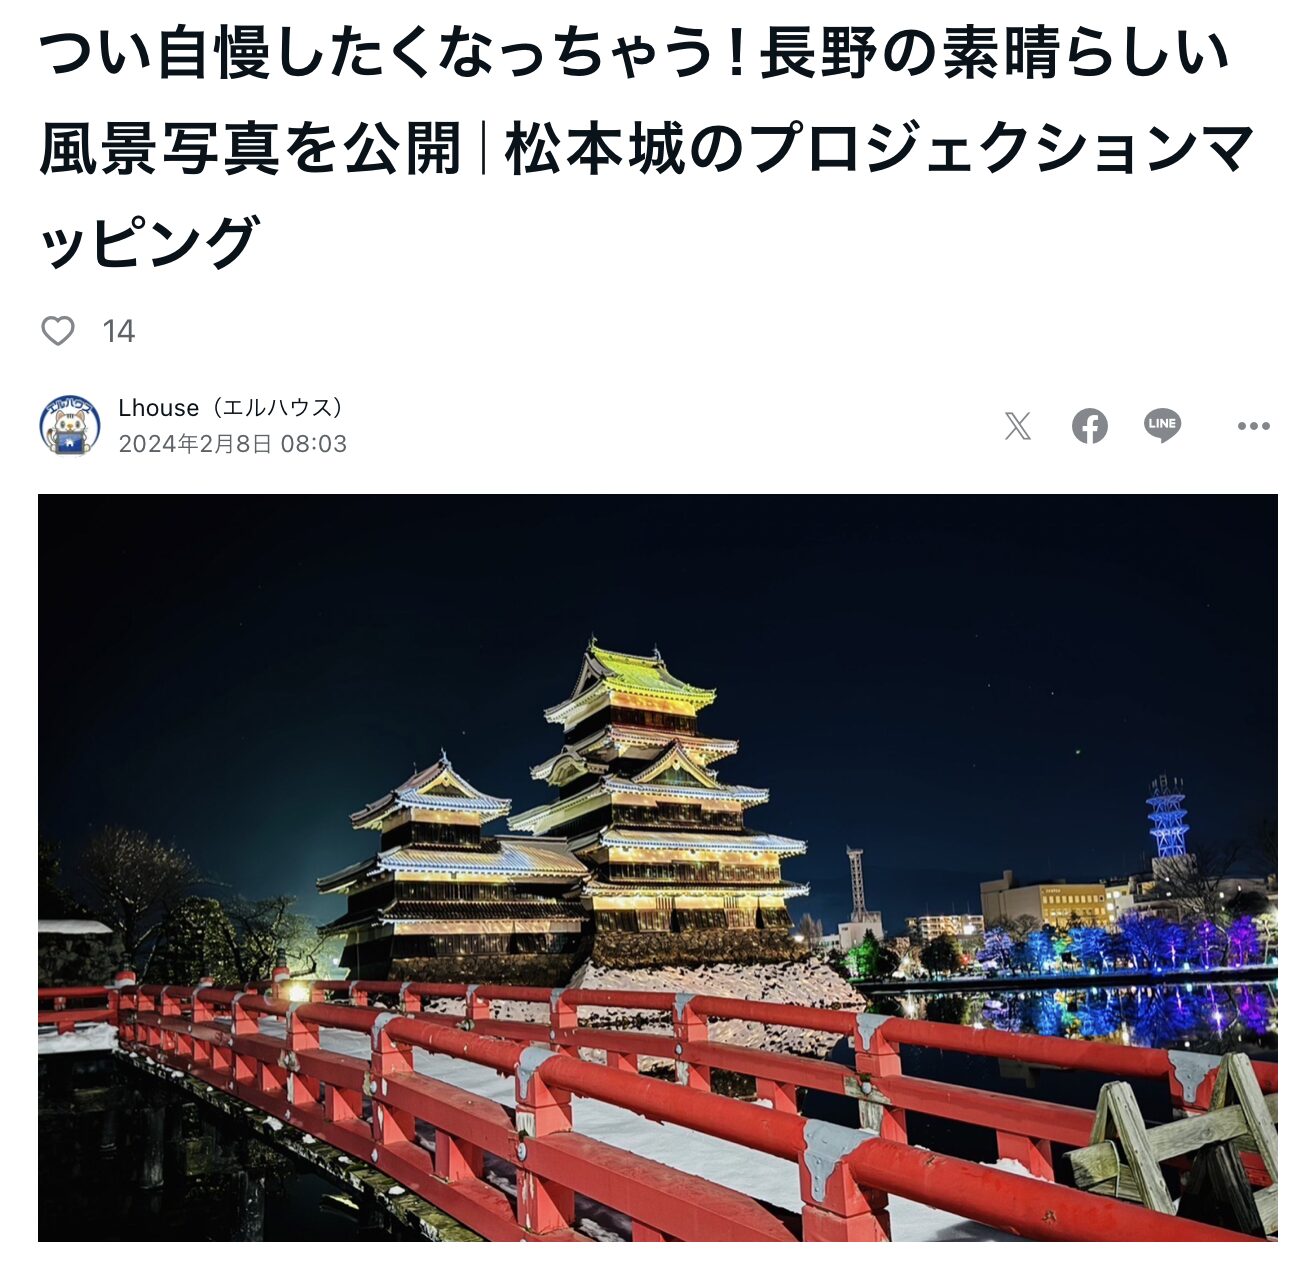 つい自慢したくなっちゃう！長野の素晴らしい風景写真を公開｜松本城のプロジェクションマッピング